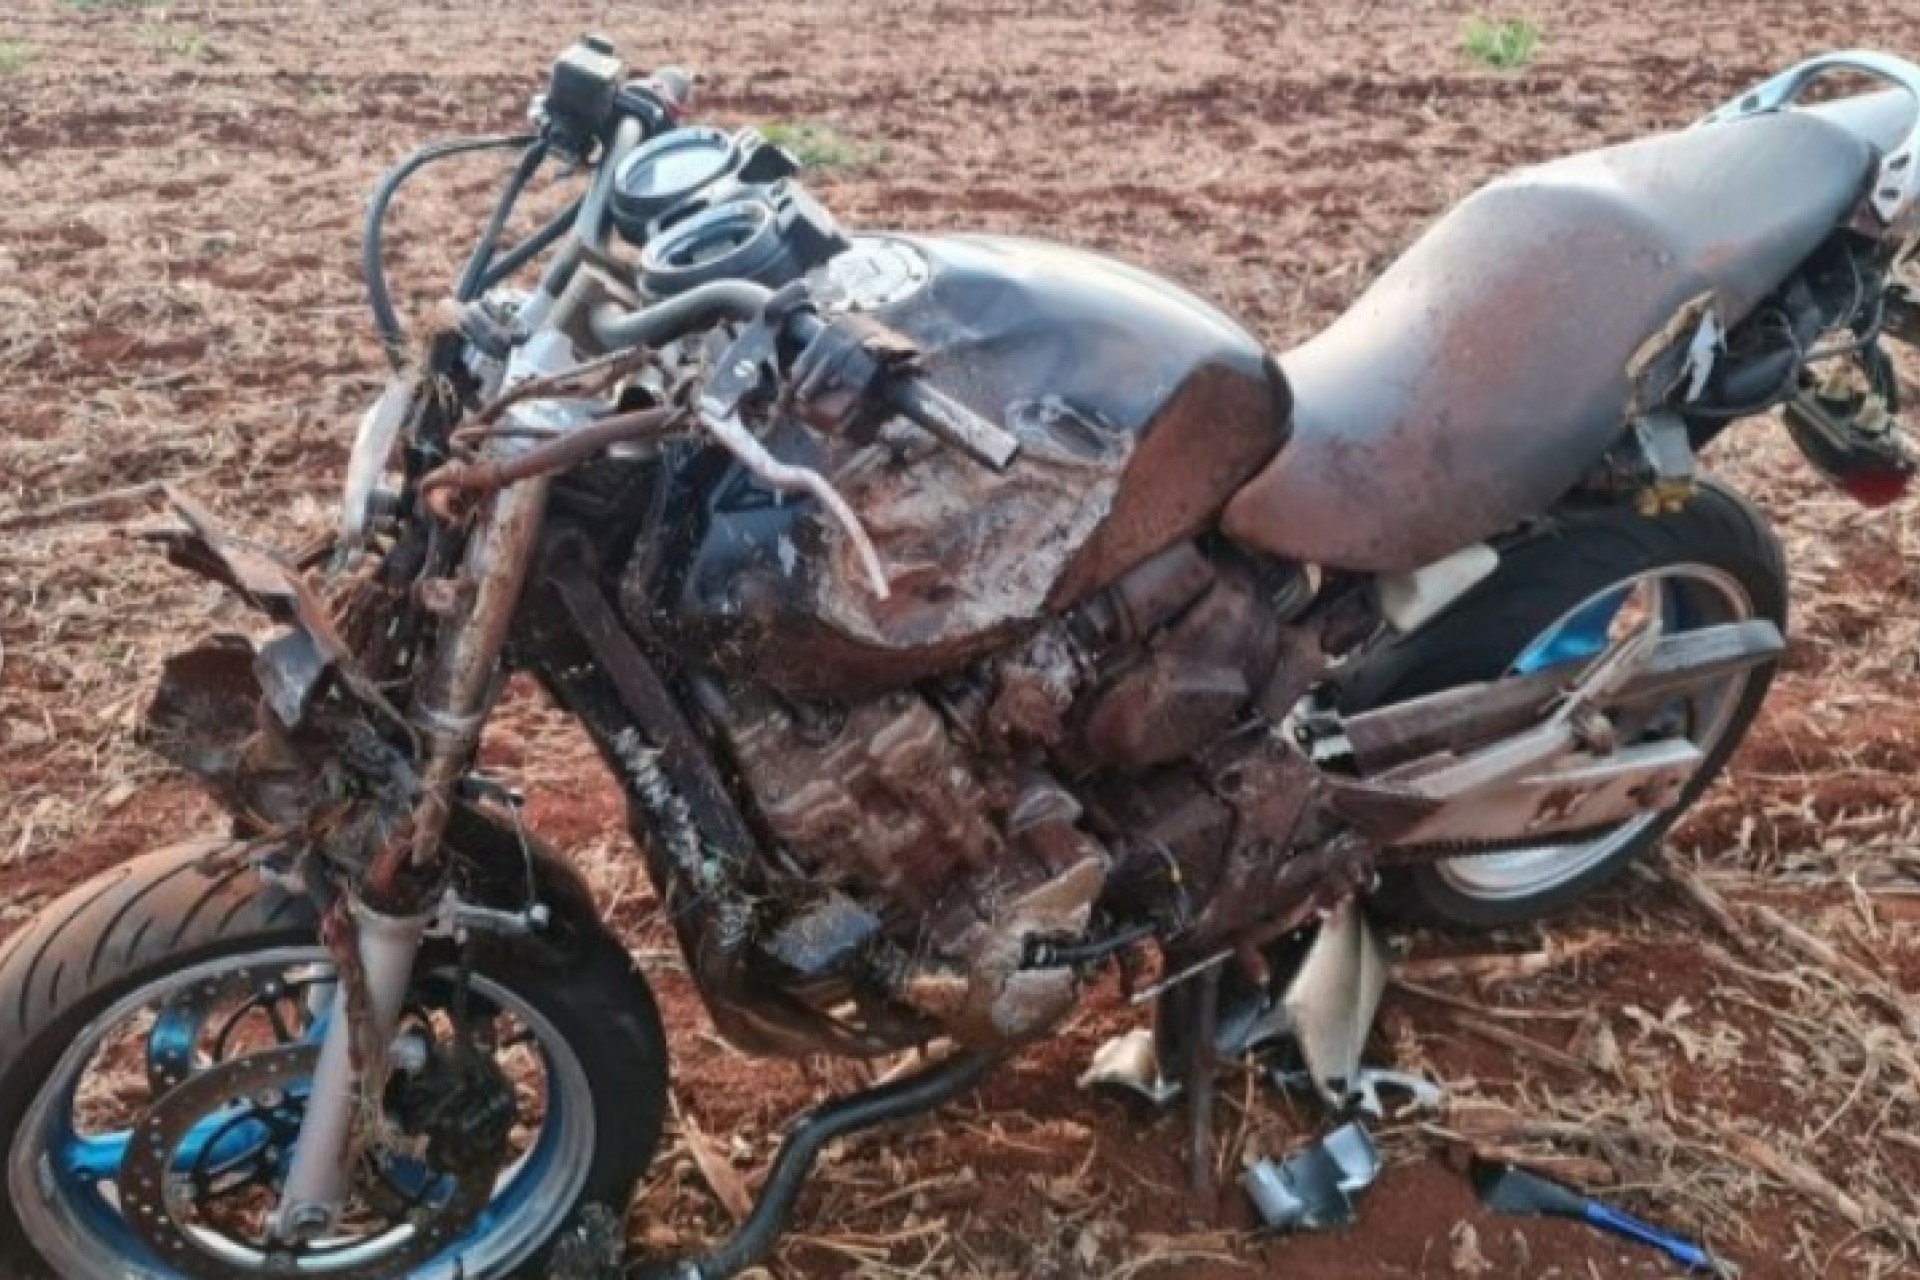 Jovem de 23 anos de idade fica em estado grave após acidente com moto esportiva na PR 495